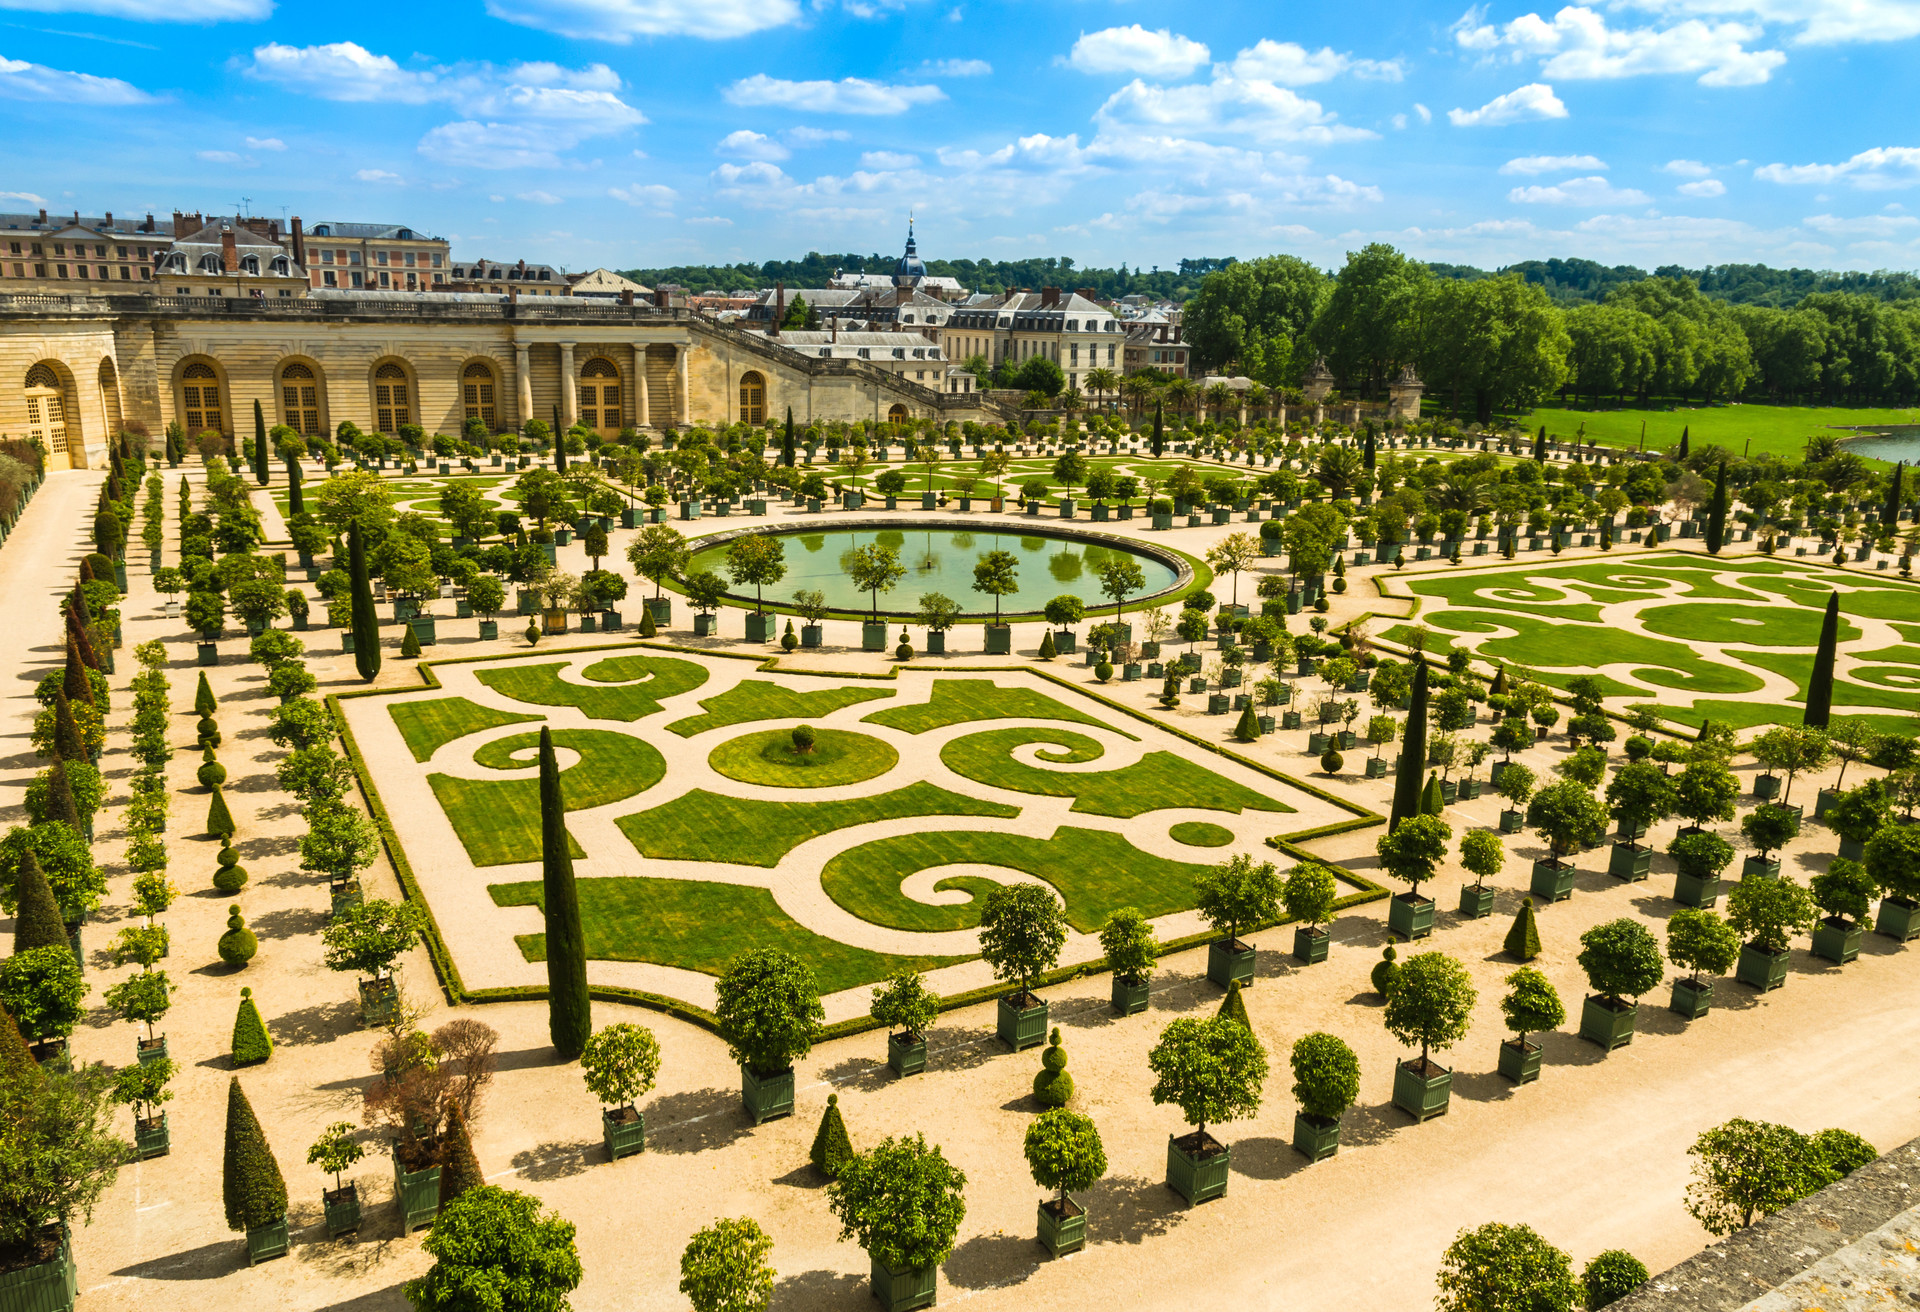 Het barokke Paleis Versailles buiten Parijs: ze lustten wel pap van een beetje buitensporigheid in die tijd